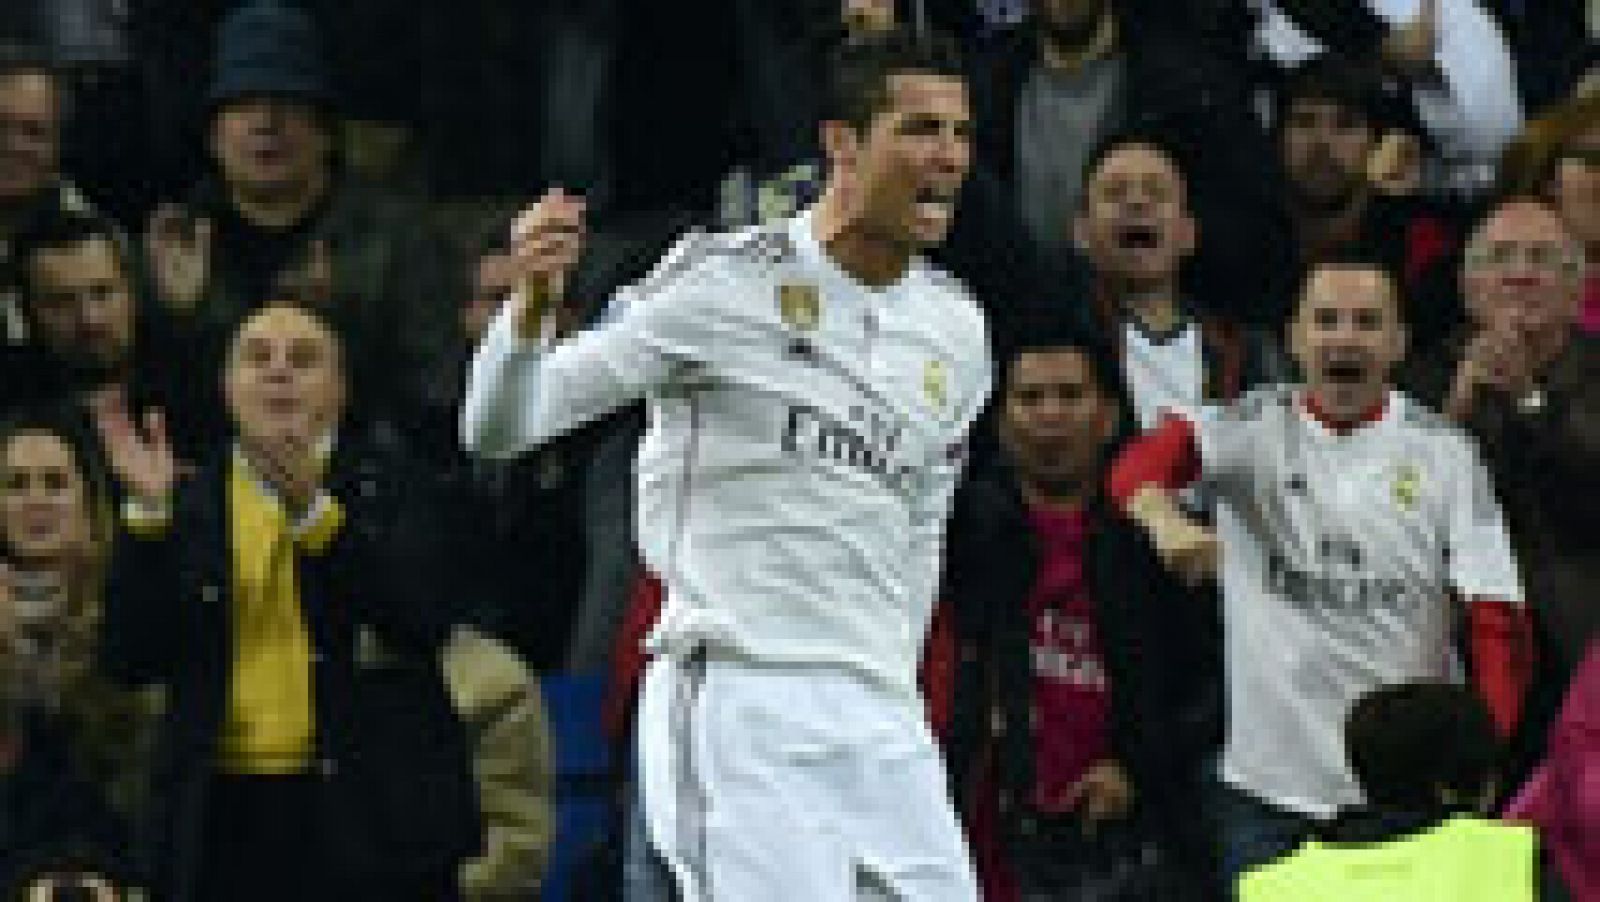 El delantero portugués del Real Madrid Cristiano Ronaldo ha marcado el 1-1 ante el Schalke con un soberbio cabezazo a saque de córner, en el minuto 24 de juego. La calma volvía al Bernabéu. 